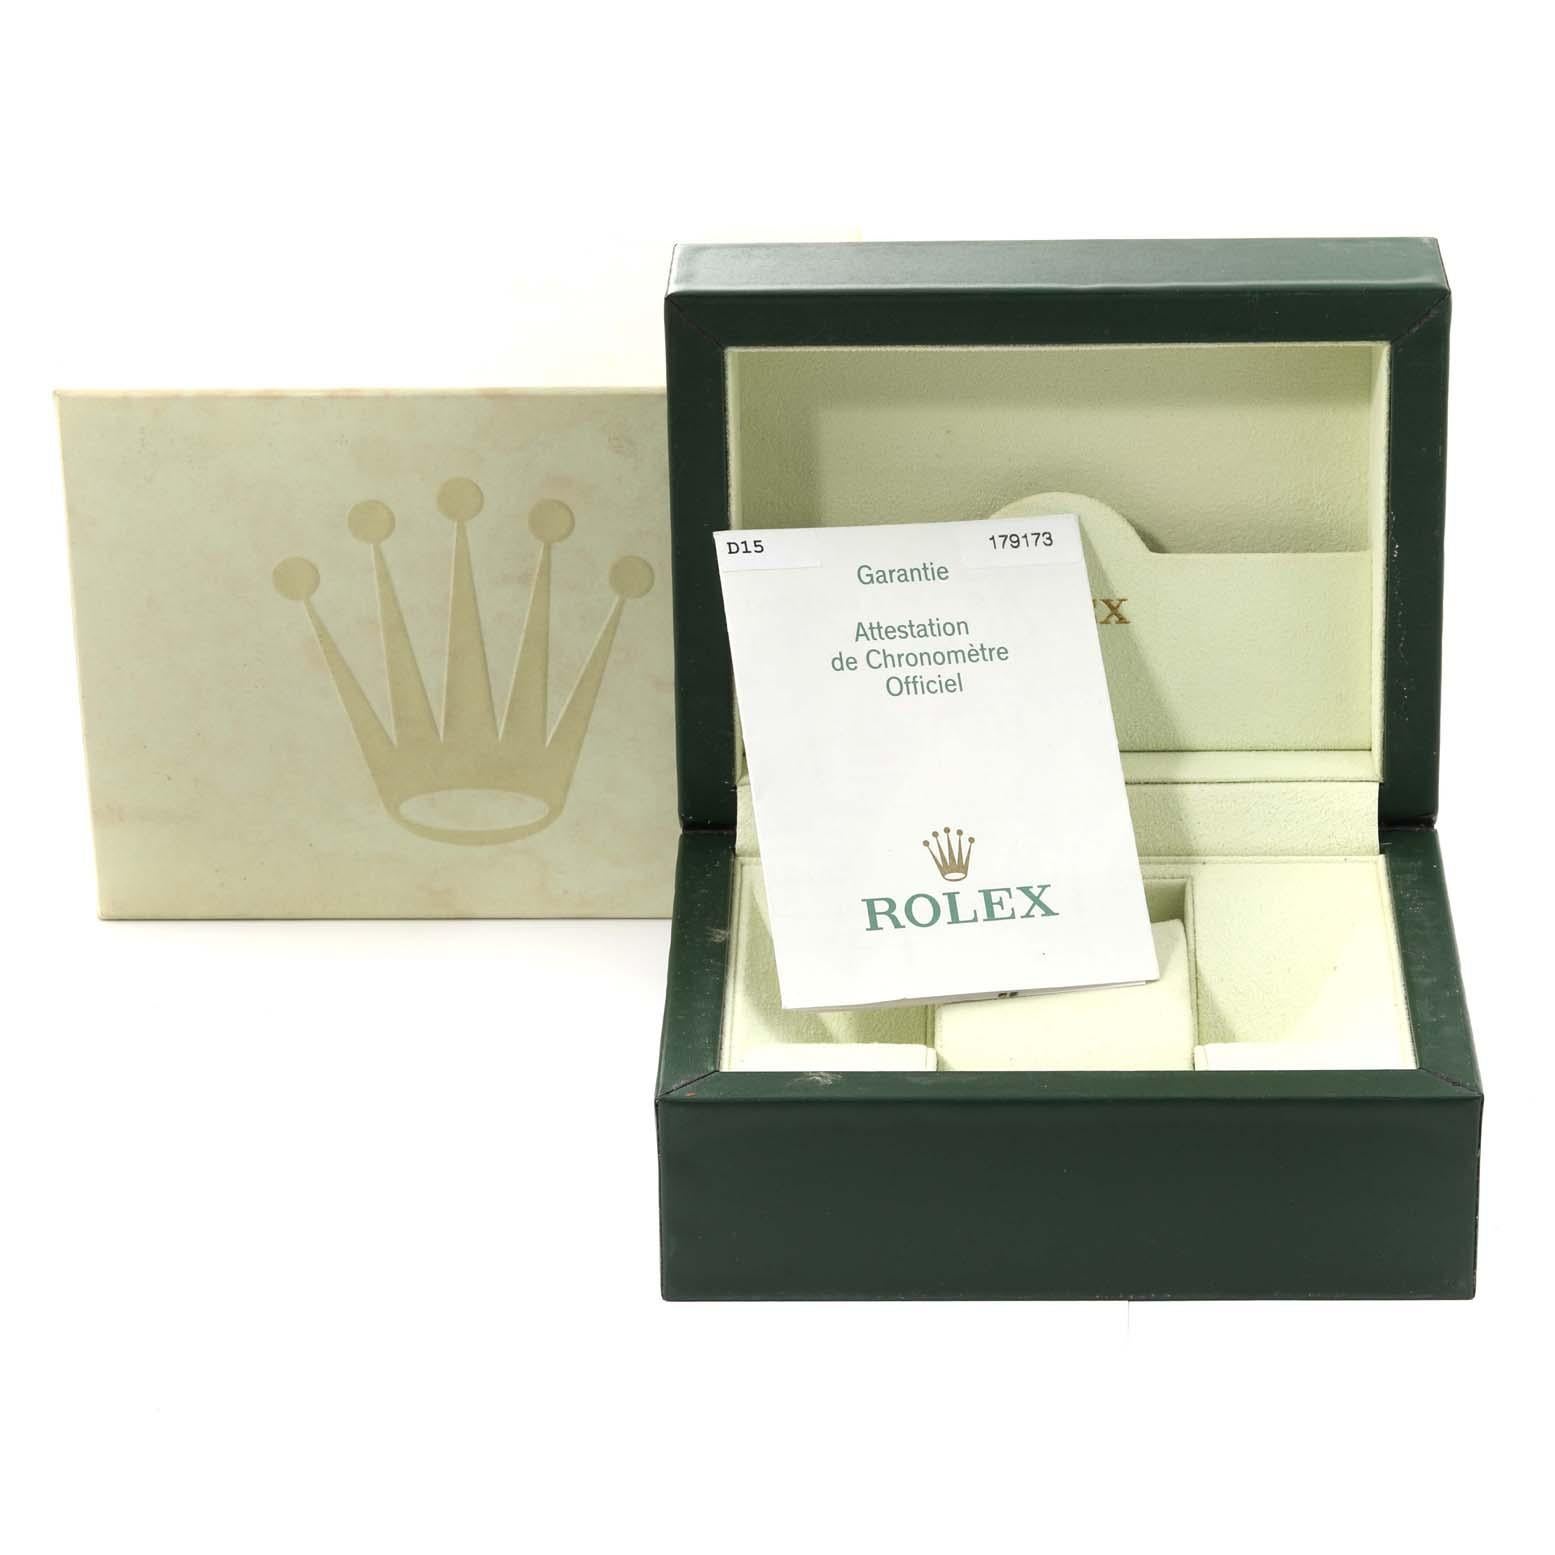 Rolex Datejust Diamant Zifferblatt Stahl Gelbgold Damenuhr 179173 Box Papiere 2